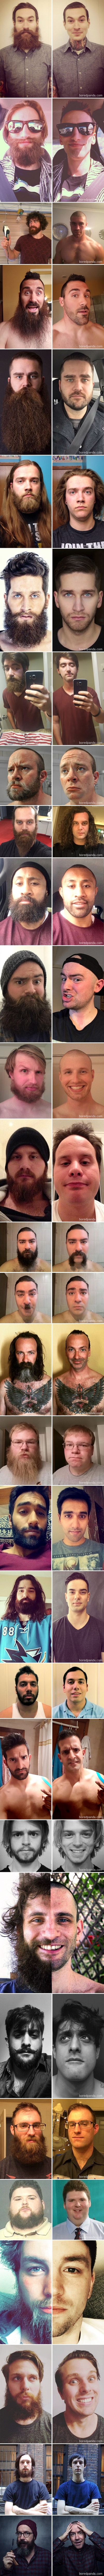 30 muškaraca koji su izgledali kao druge osobe nakon što su obrijali bradu i brkove